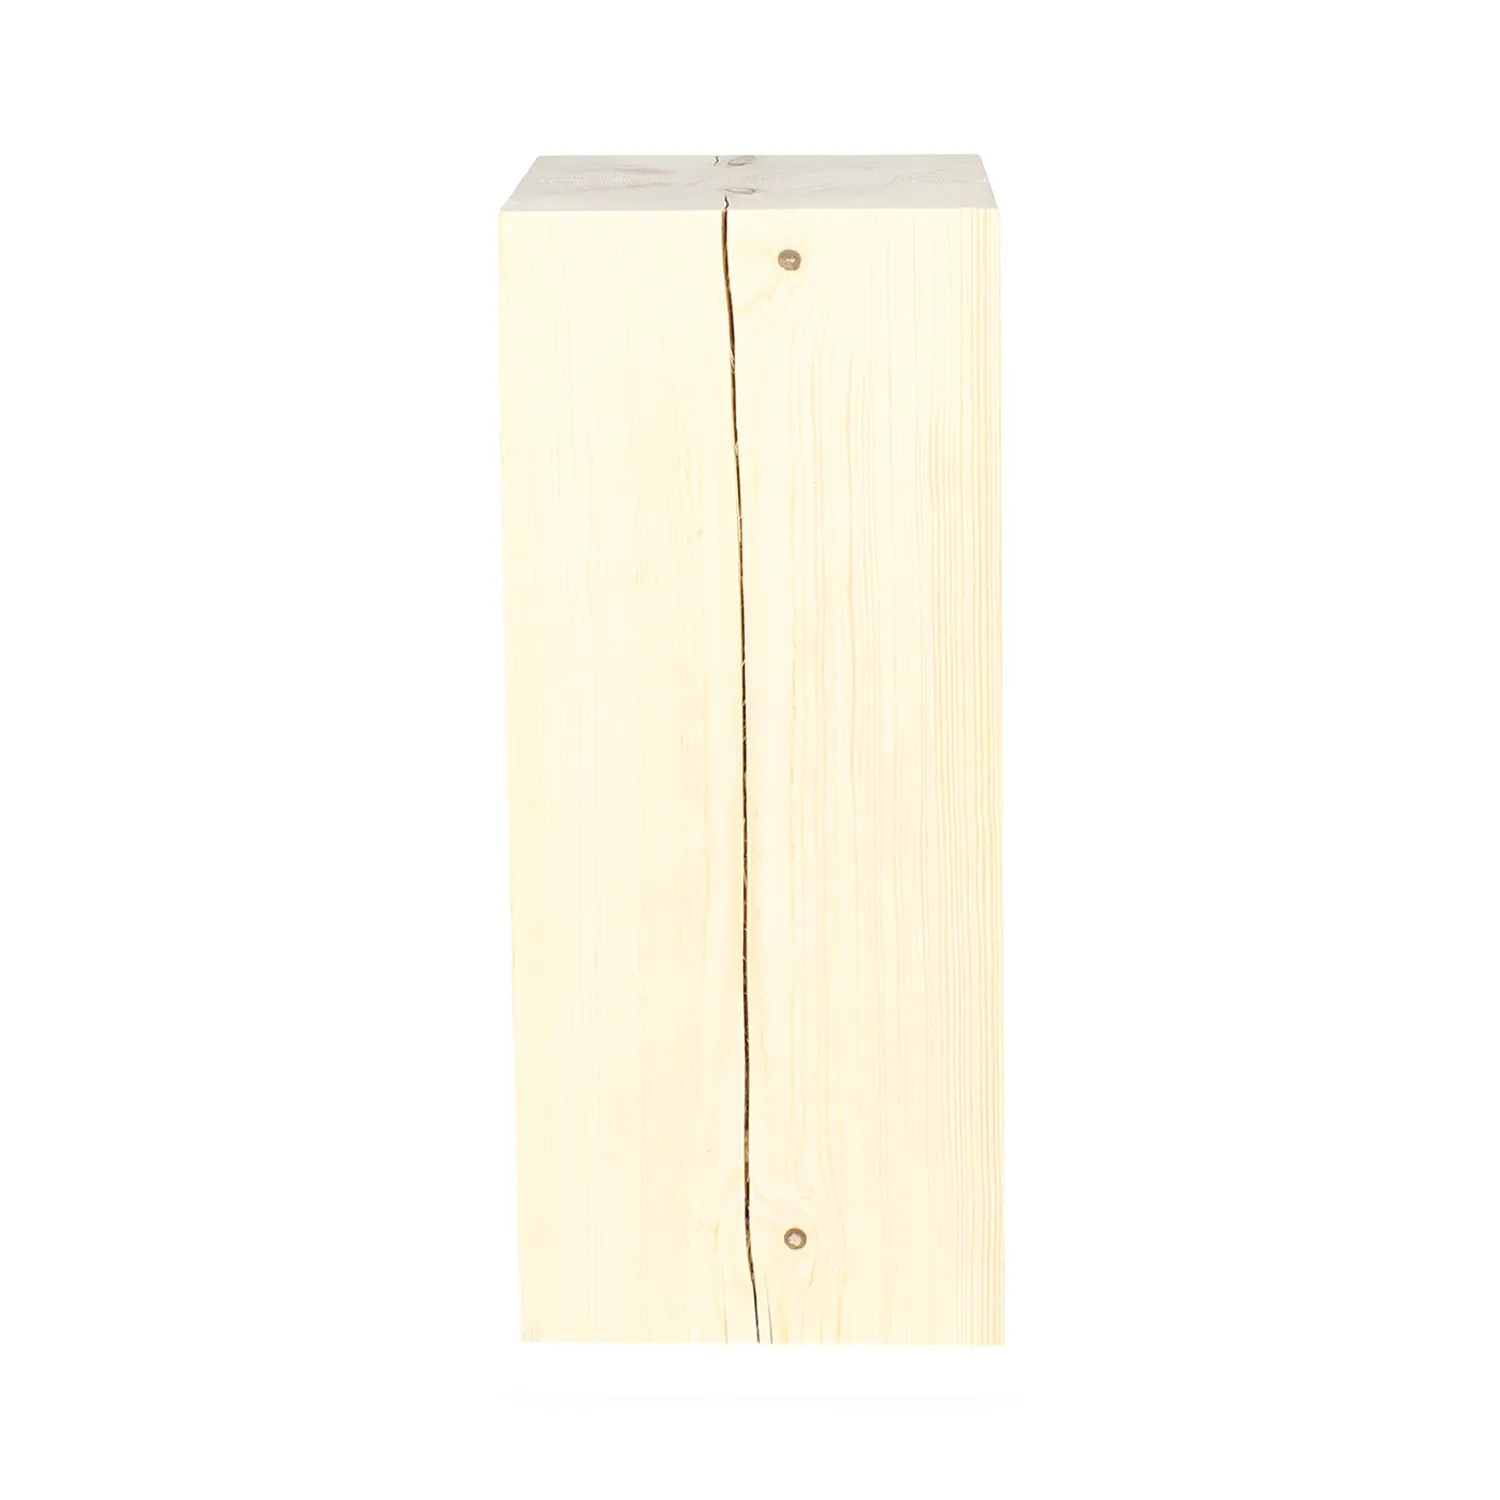 Seitenansicht von Holzblock mit dekorativem Riss